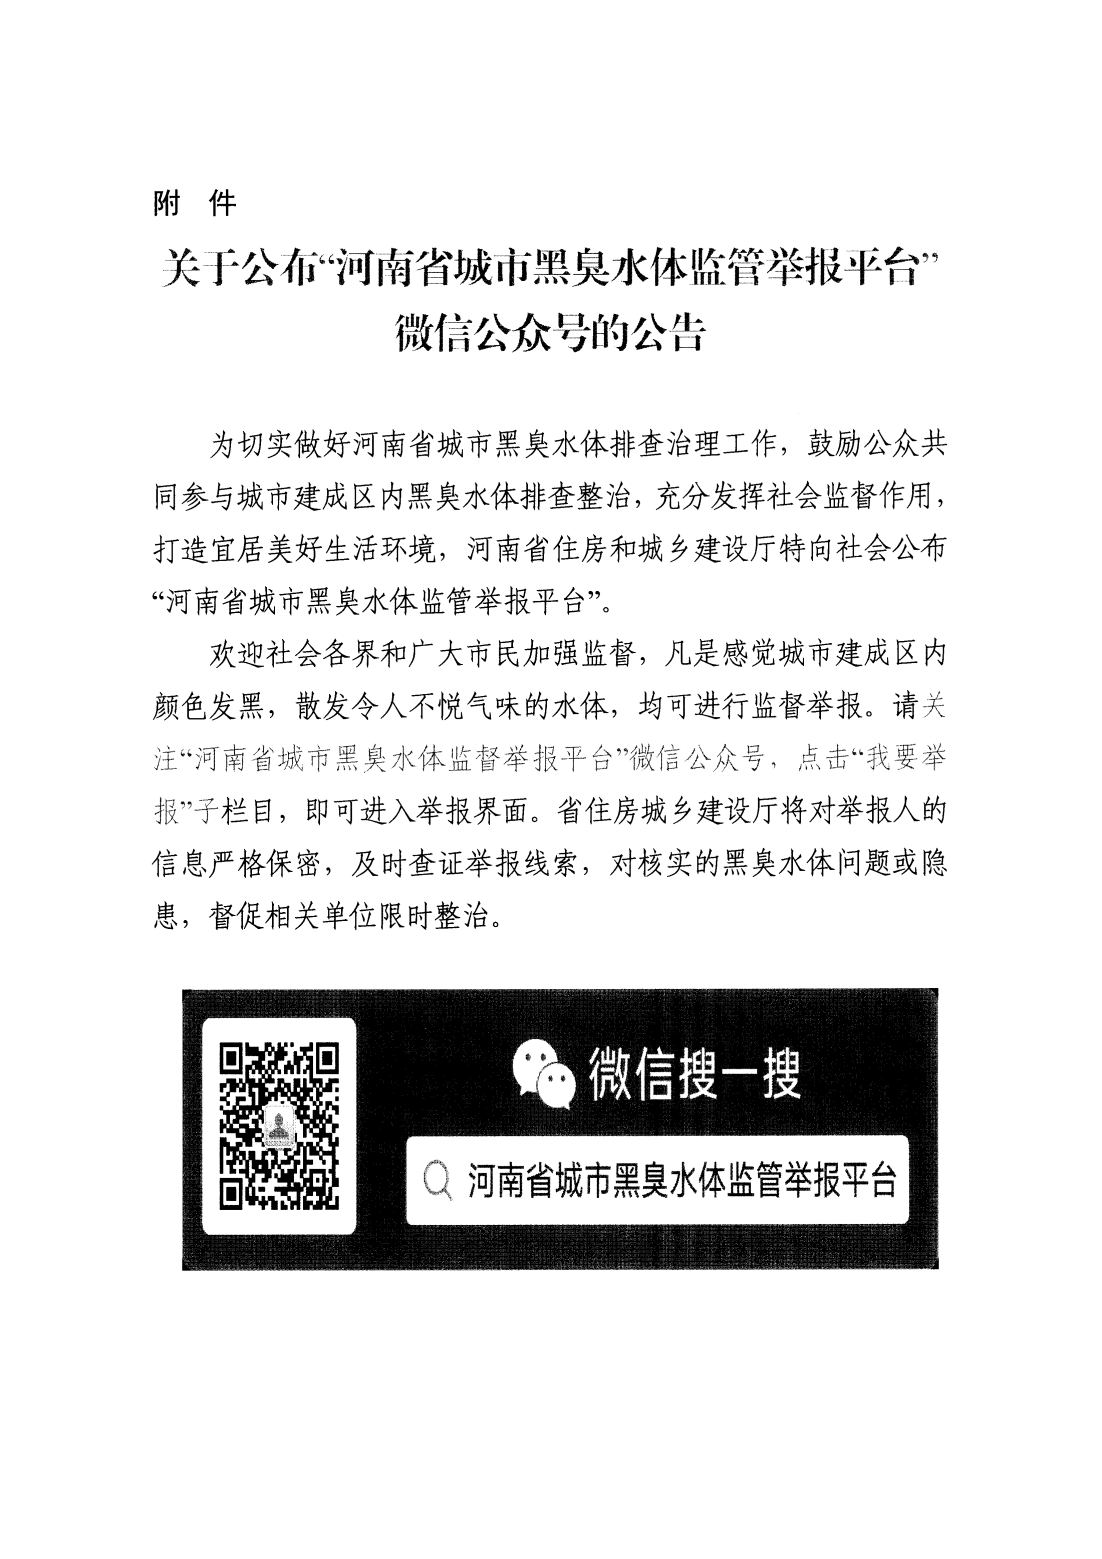 “河南省城市黑臭水体监管举报平台”微信公众号上线工作的通知_03.png